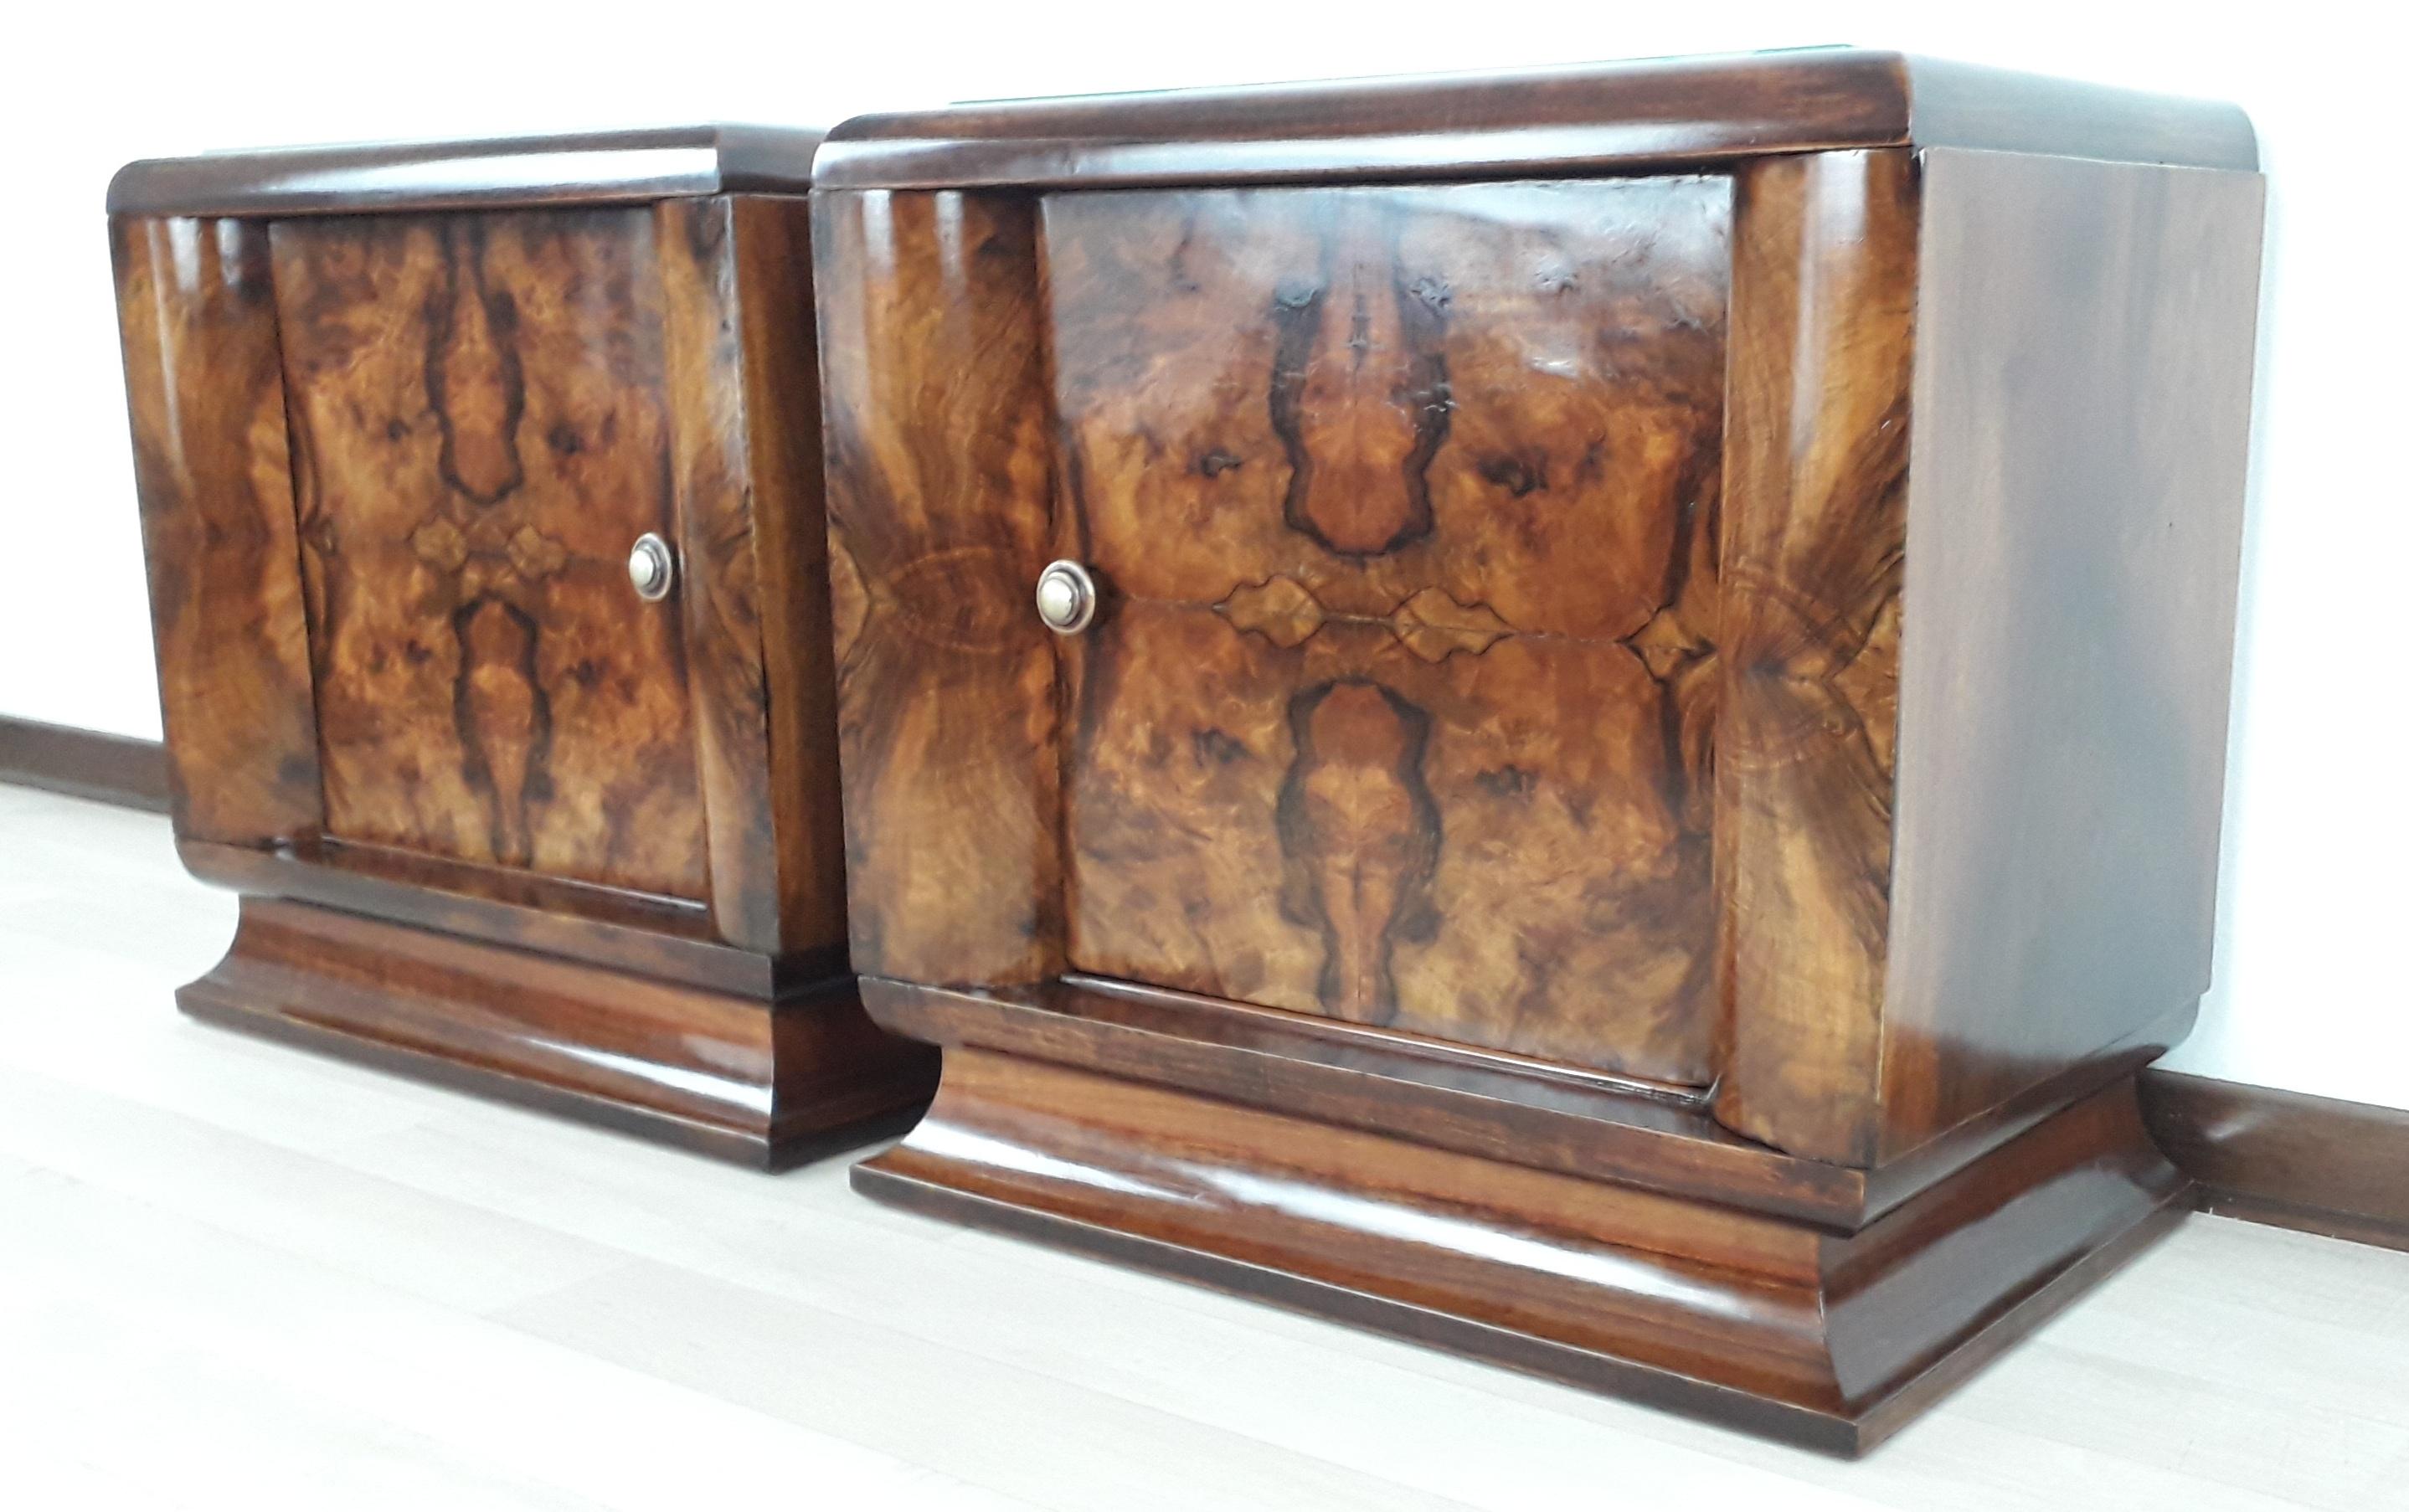 Élégante et raffinée paire de tables de chevet Art Dèco Fiorentini de 1925 entièrement réalisées en ronce de noyer.
Pieds en noyer blond  arrondis pour être alignés avec les extrémités de l'armoire.
Laiton et bakélite travaillés et poignées